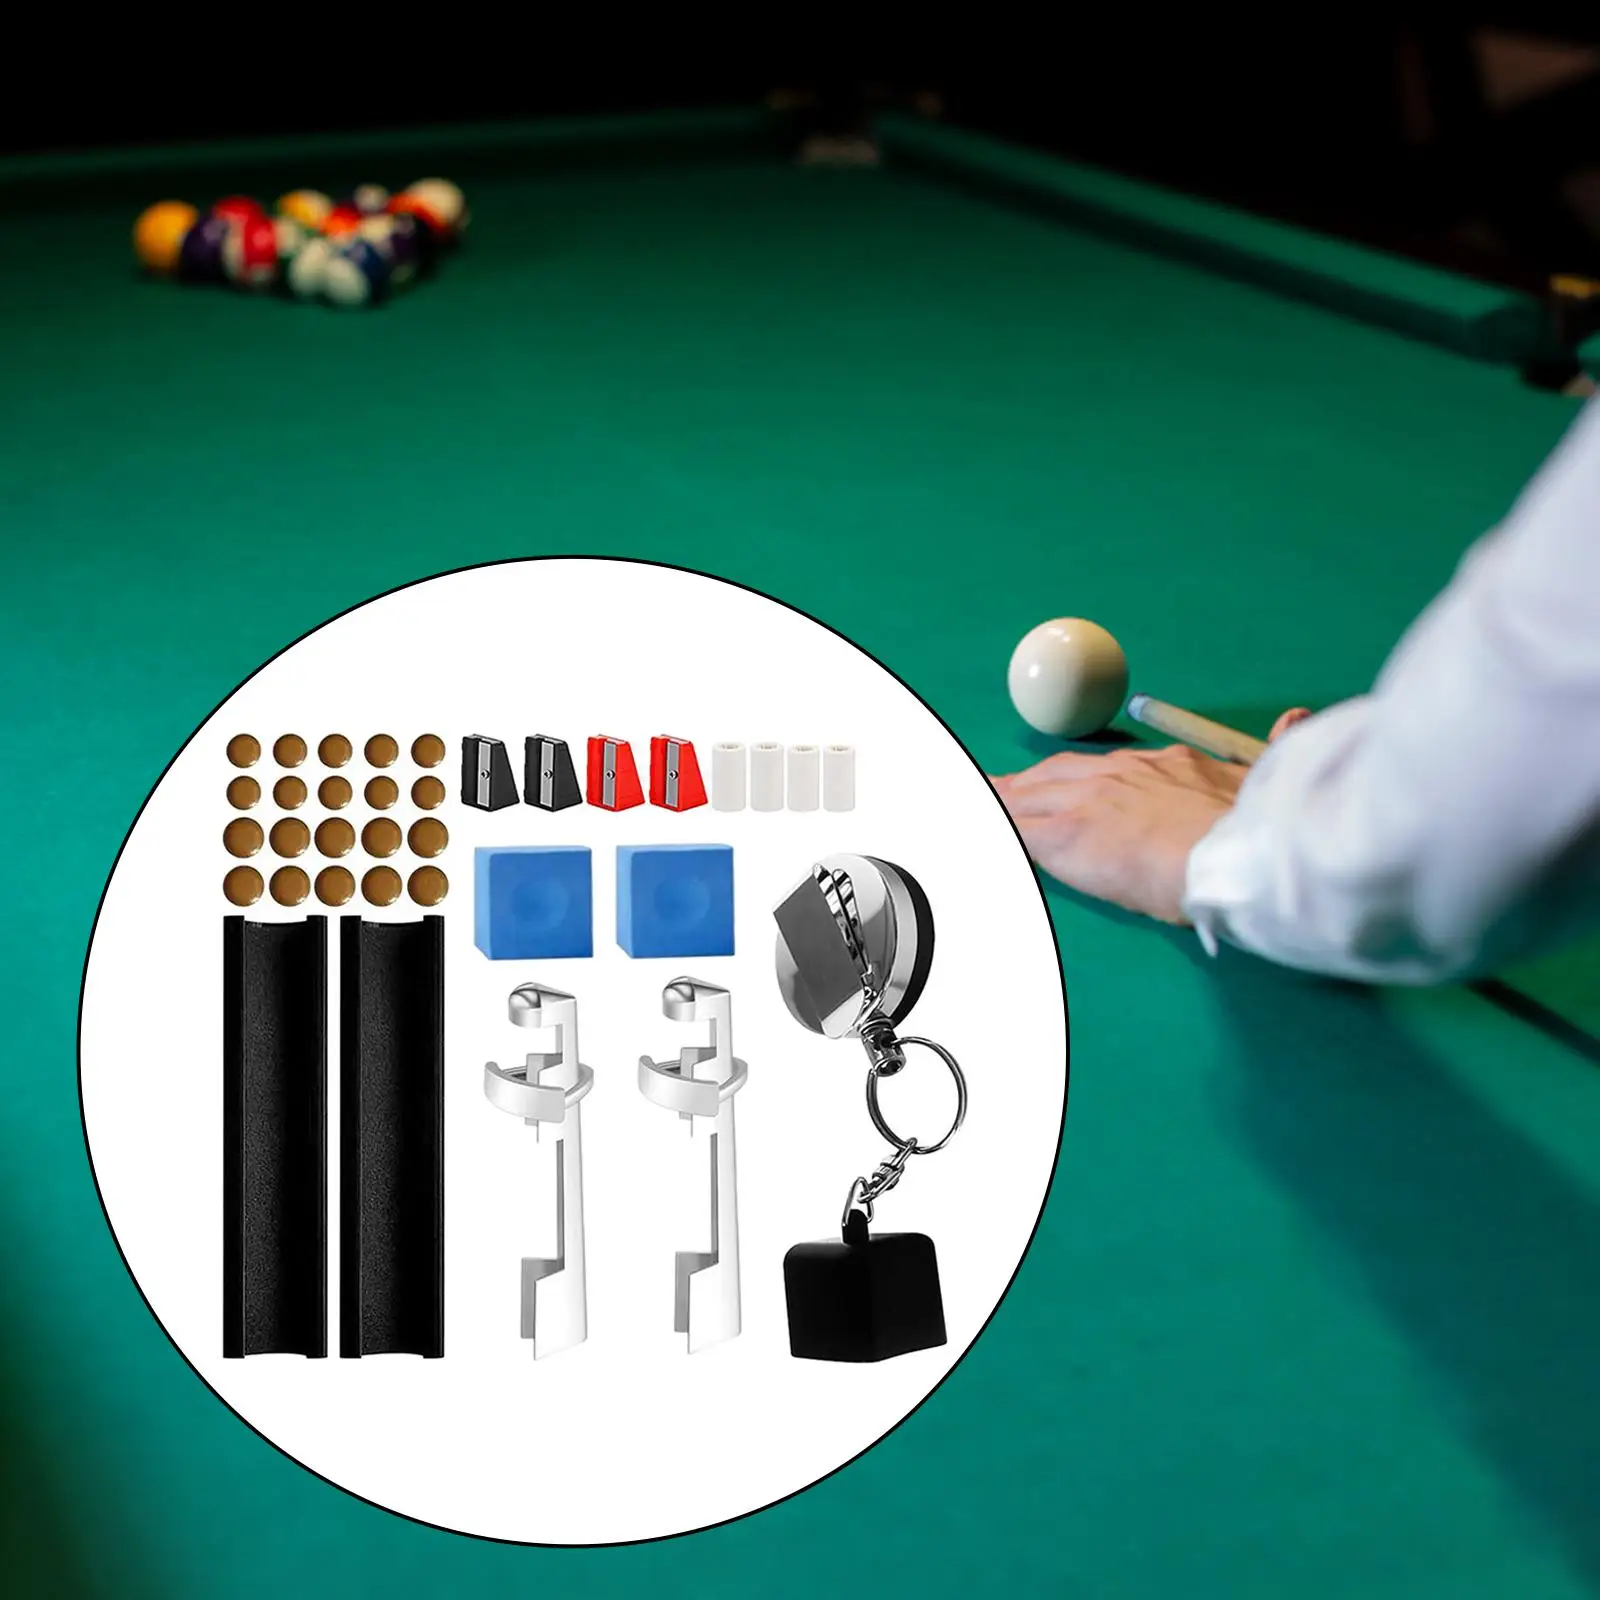 35x Pool Cue Repair Kit Billiard Table Cue Tips Billiard Pool Cue Tip Repair Tool for Outdoor Sports Beginners Pool Table